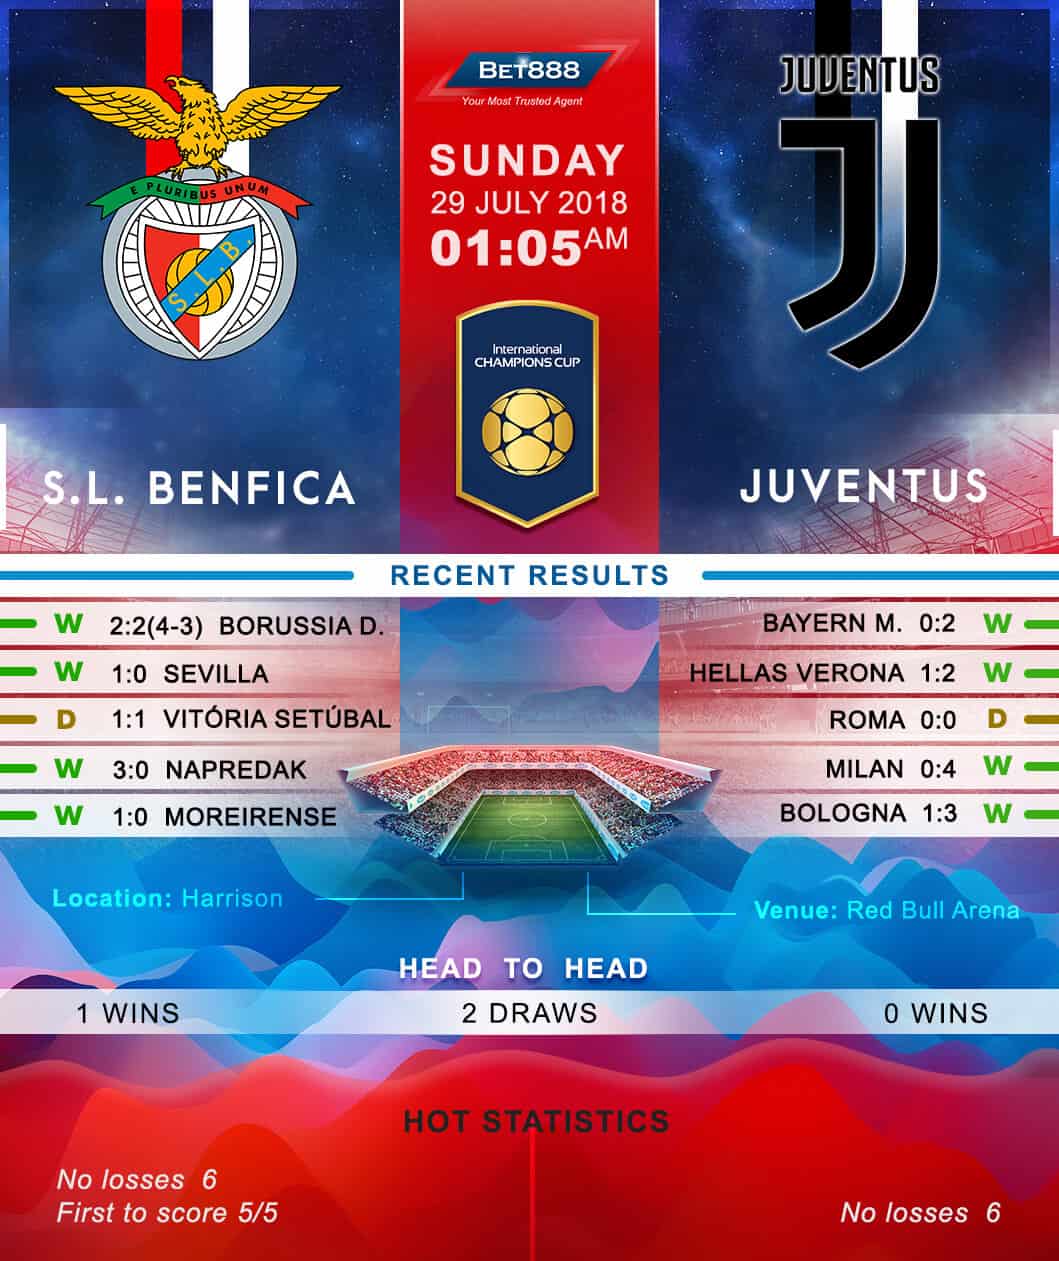 Benfica vs Juventus 29/07/18